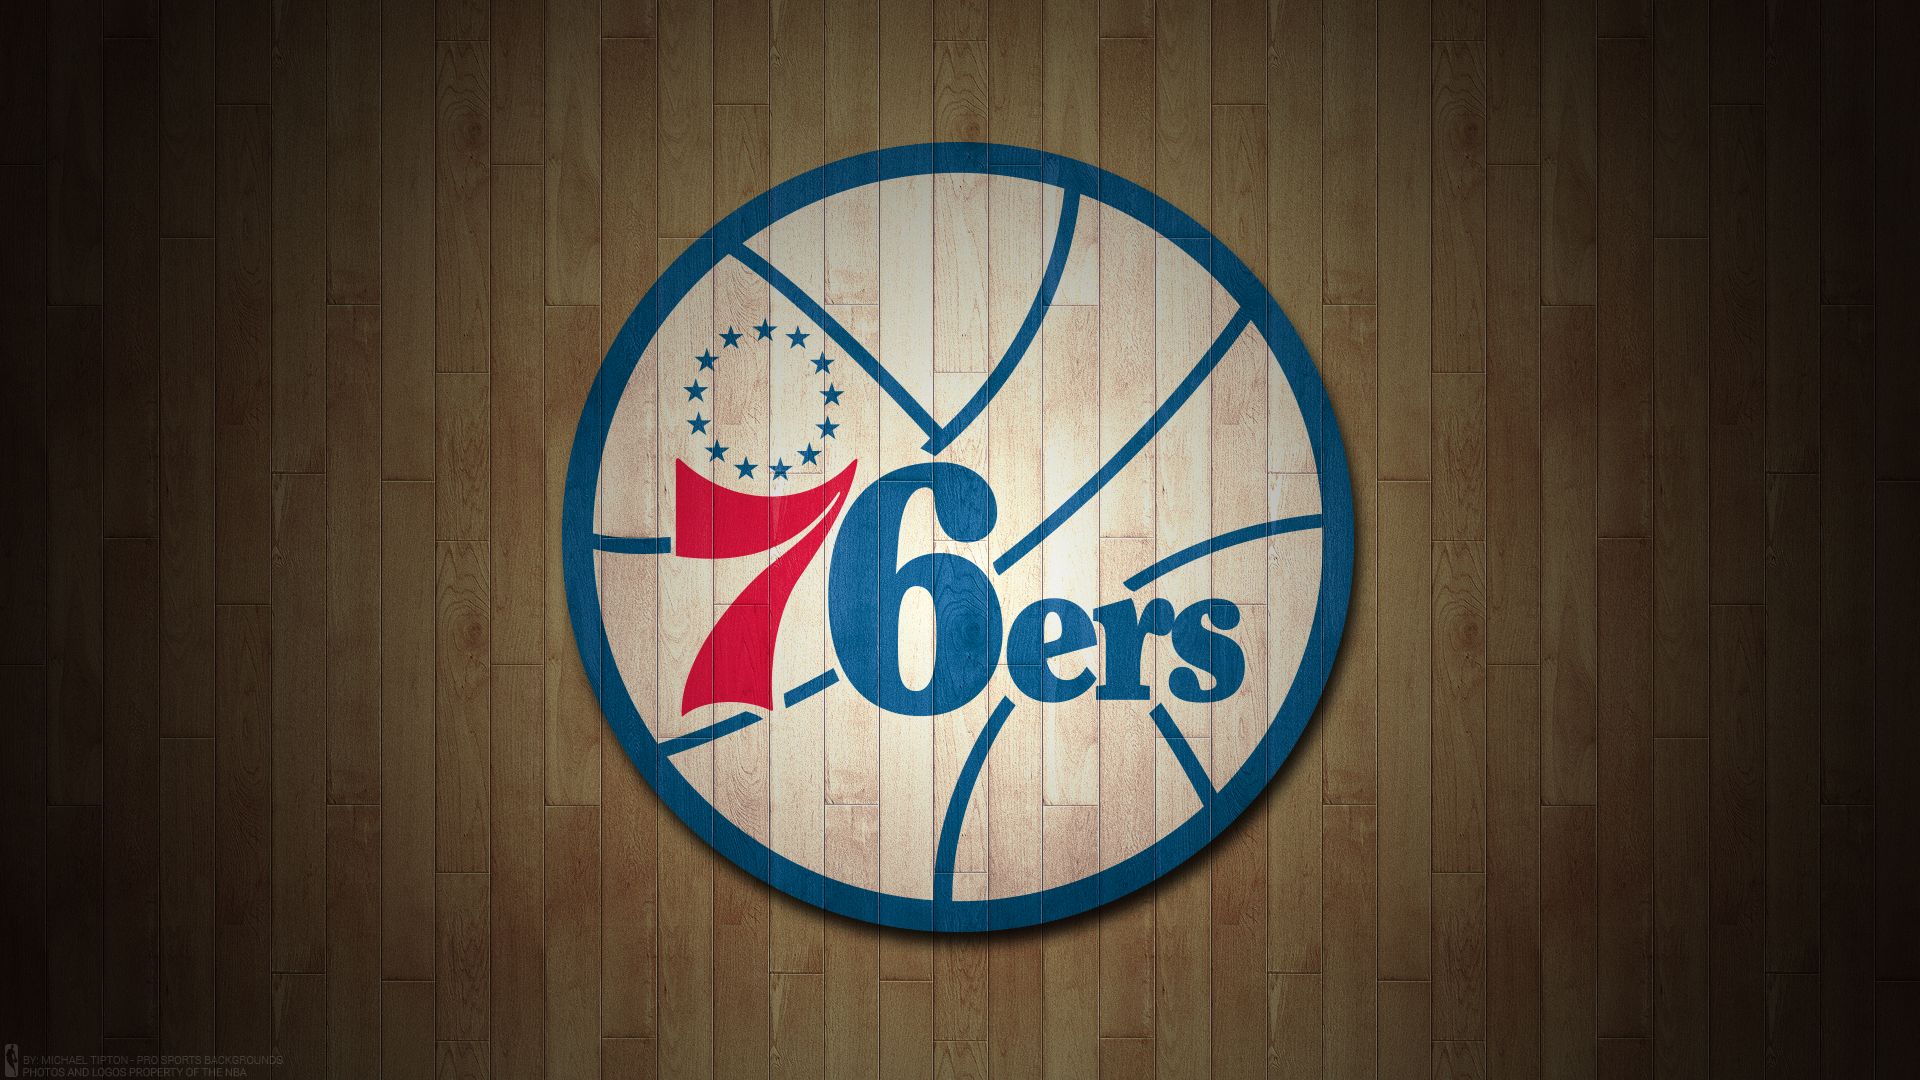 HD wallpaper: 76ers, basketball, nba, philadelphia